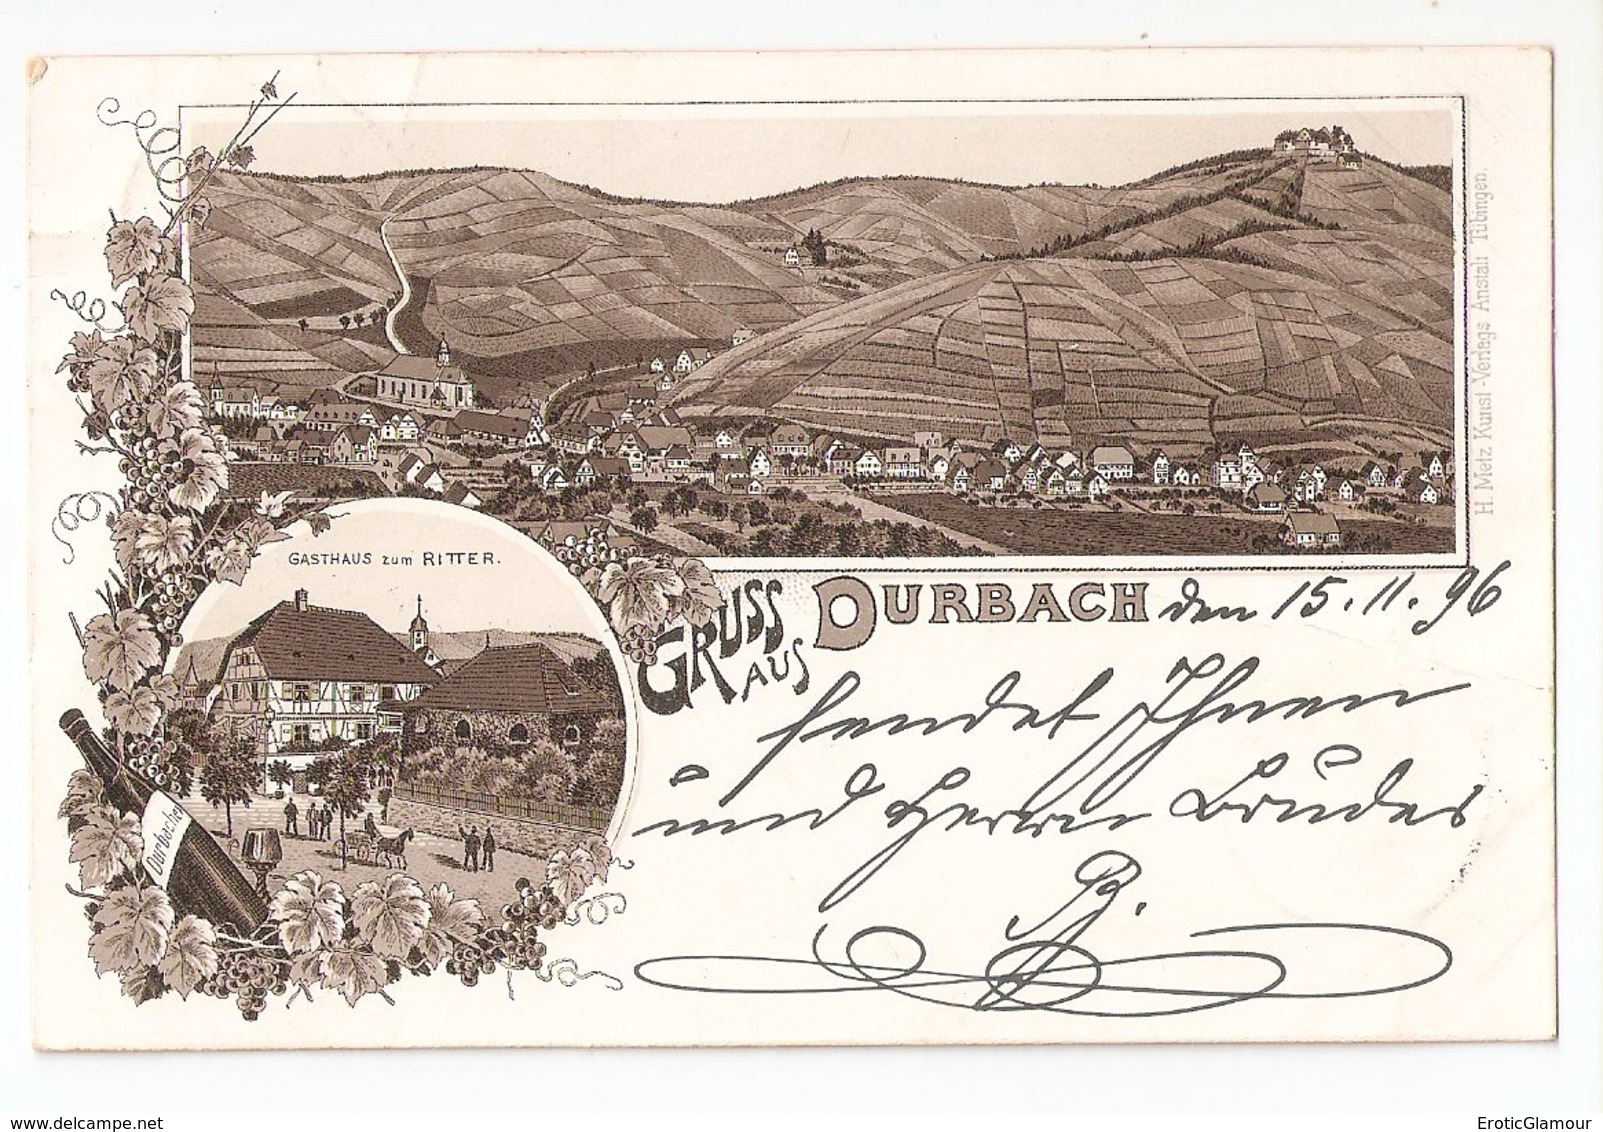 1896 DURBACH To Lahr. Deutsche Reichspost Postcard Ansichtskarte. Addressed To Hotel Krauss. Excellent Condition - Offenburg